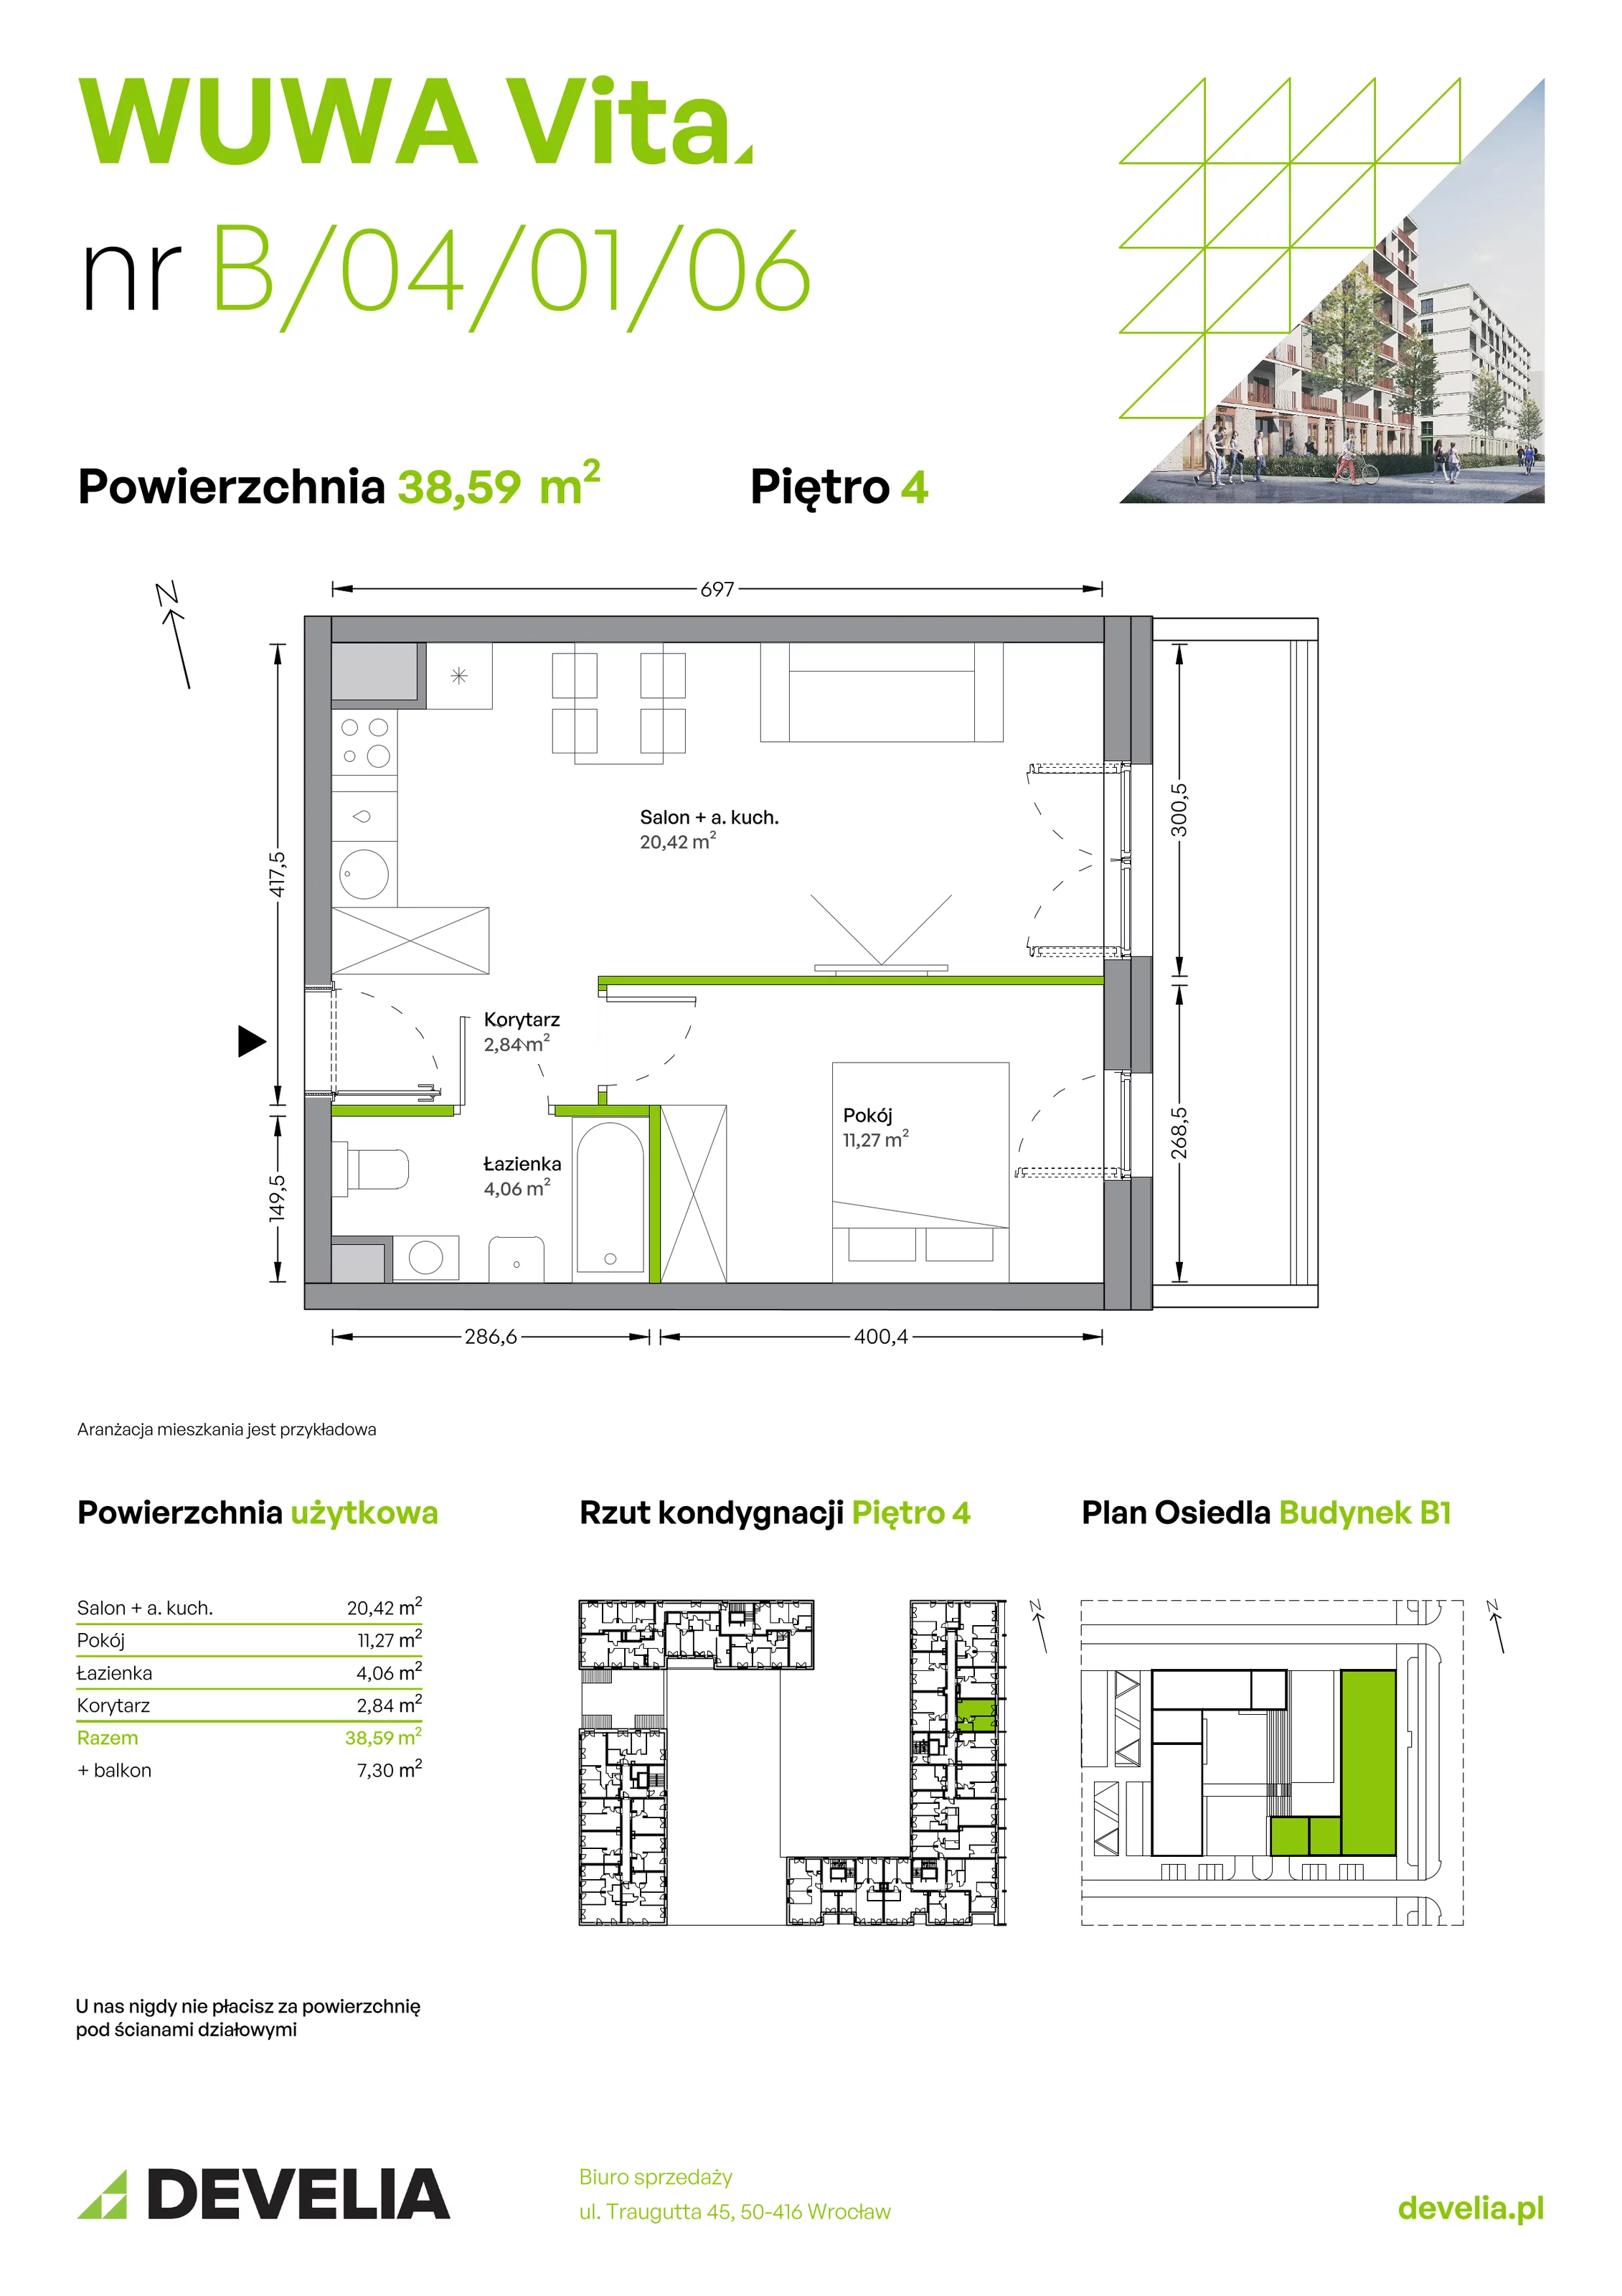 Mieszkanie 38,59 m², piętro 4, oferta nr B.04.01.06, WUWA Vita, Wrocław, Żerniki, Fabryczna, ul. Tadeusza Brzozy